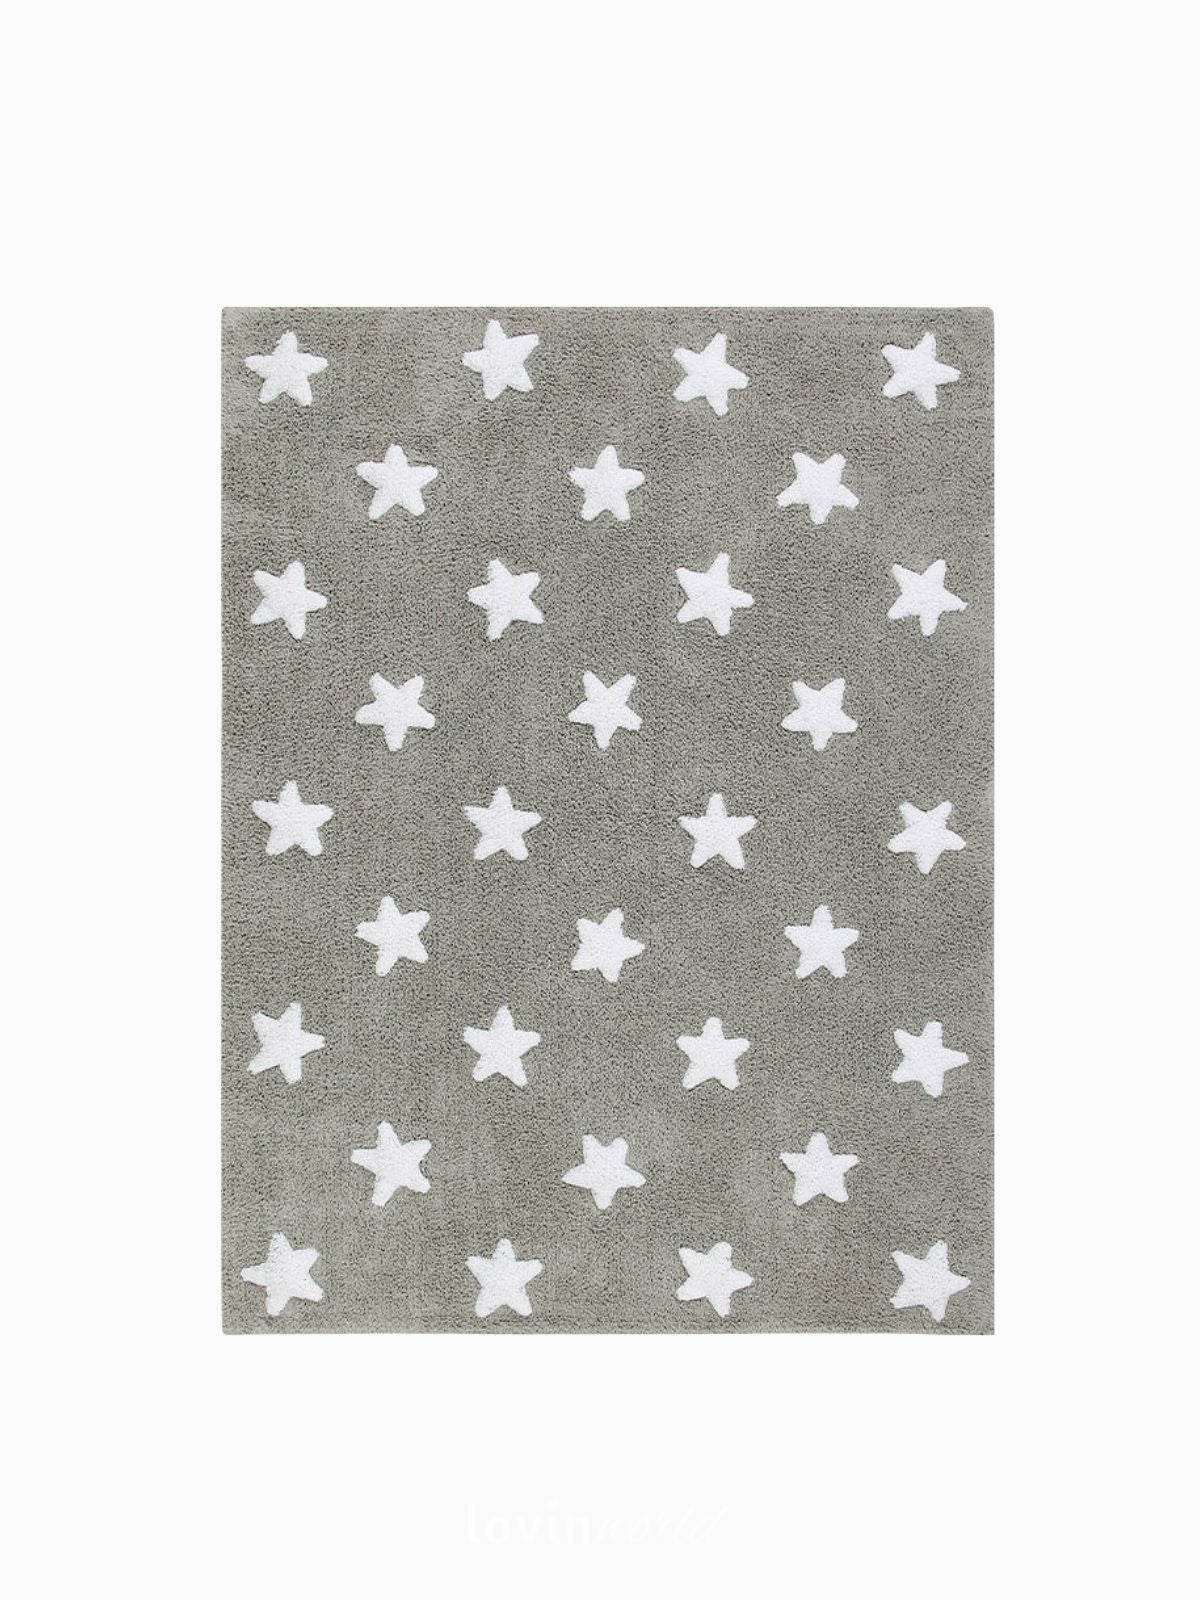 Tappeto lavabile per bambini Stars in colore marrone 120x160 cm.-1